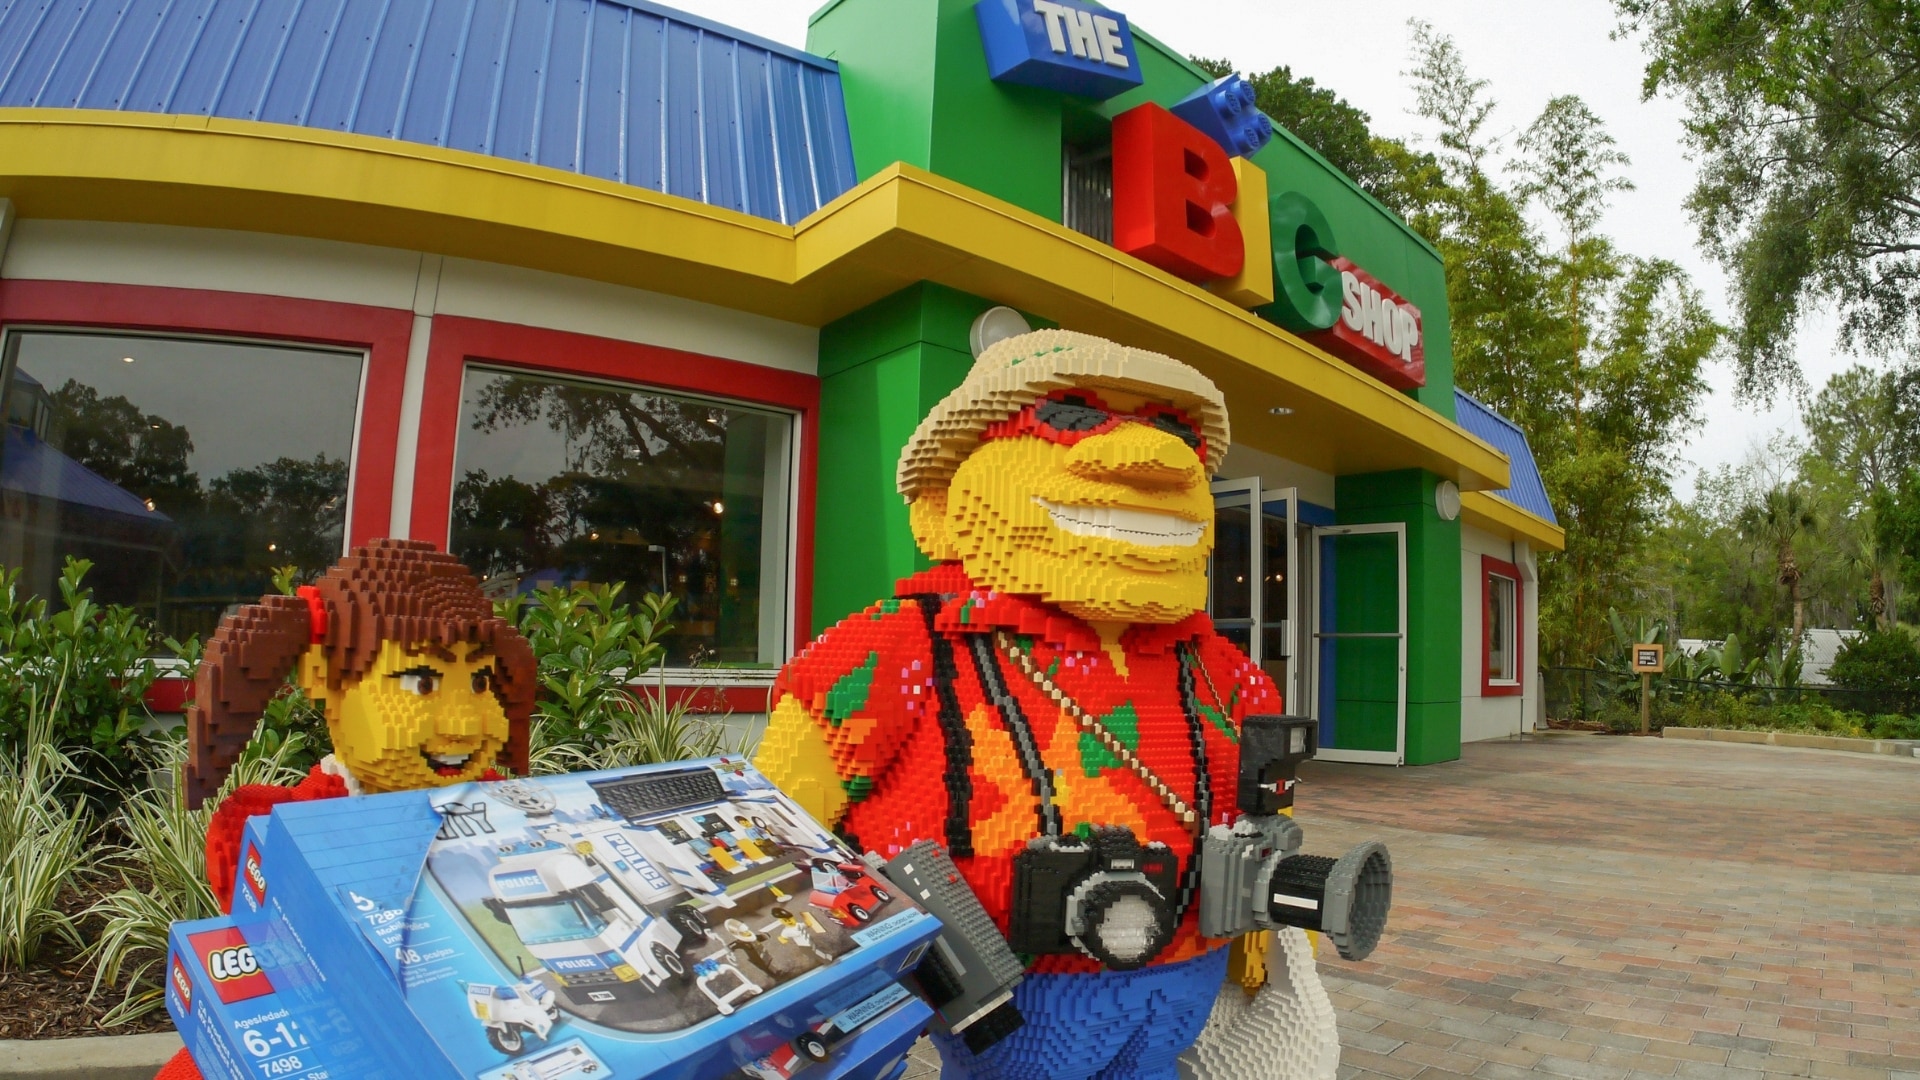 Legoland Florida - The Big Shop